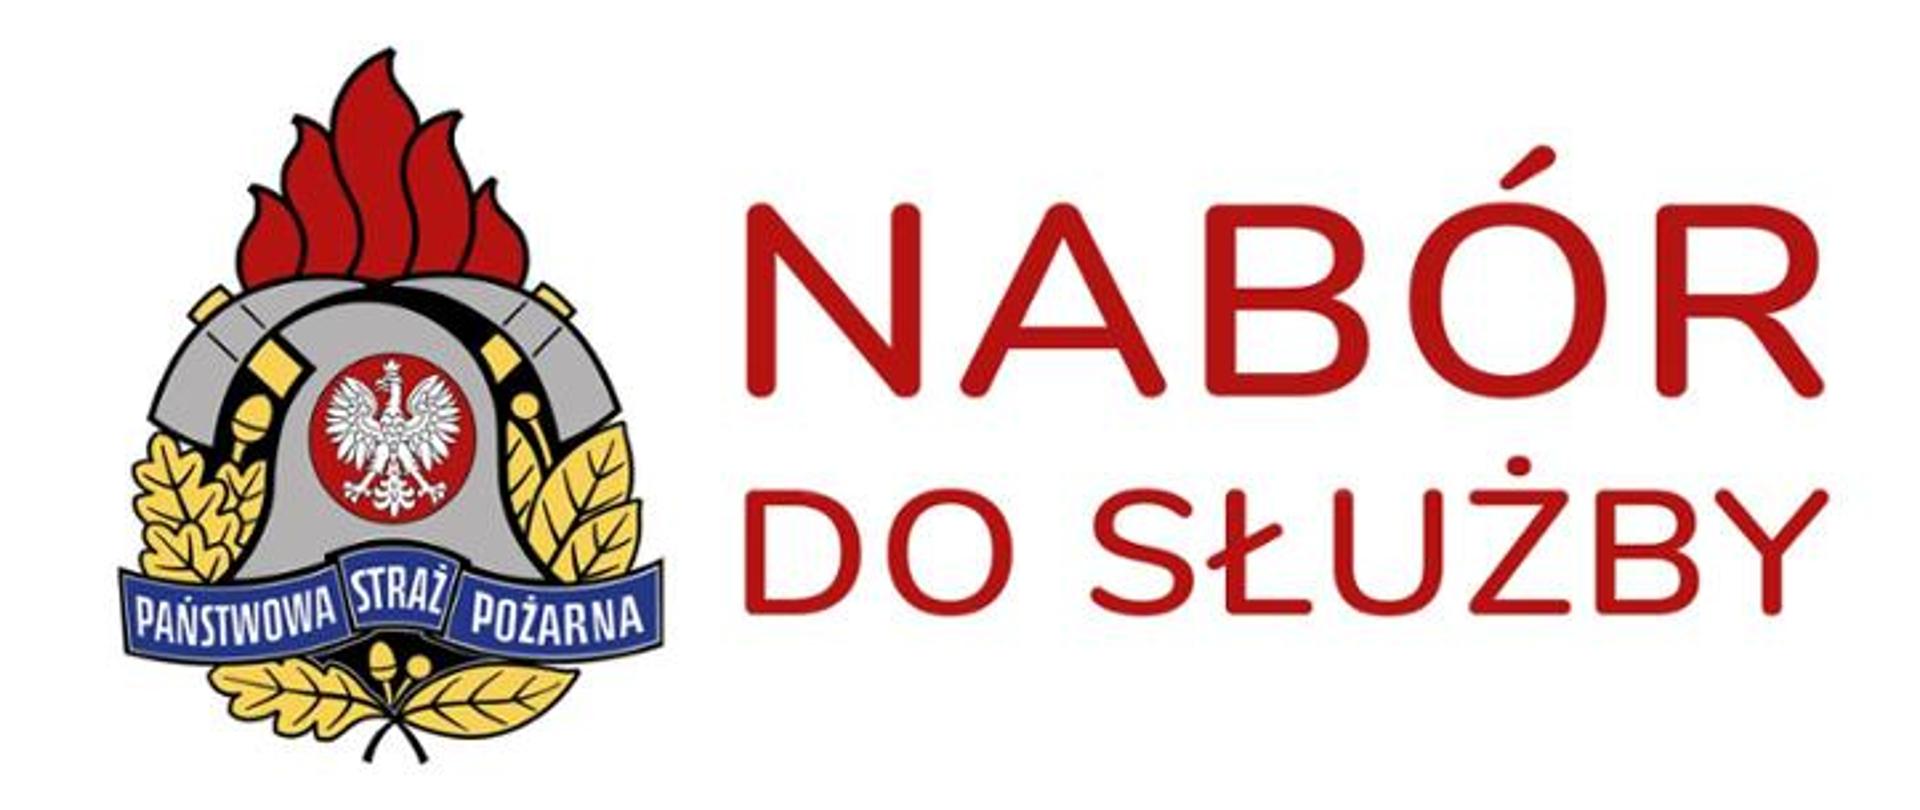 Zdjęcie przedstawia logo Państwowej Straży Pożarnej oraz napis NABÓR DO SŁUŻBY